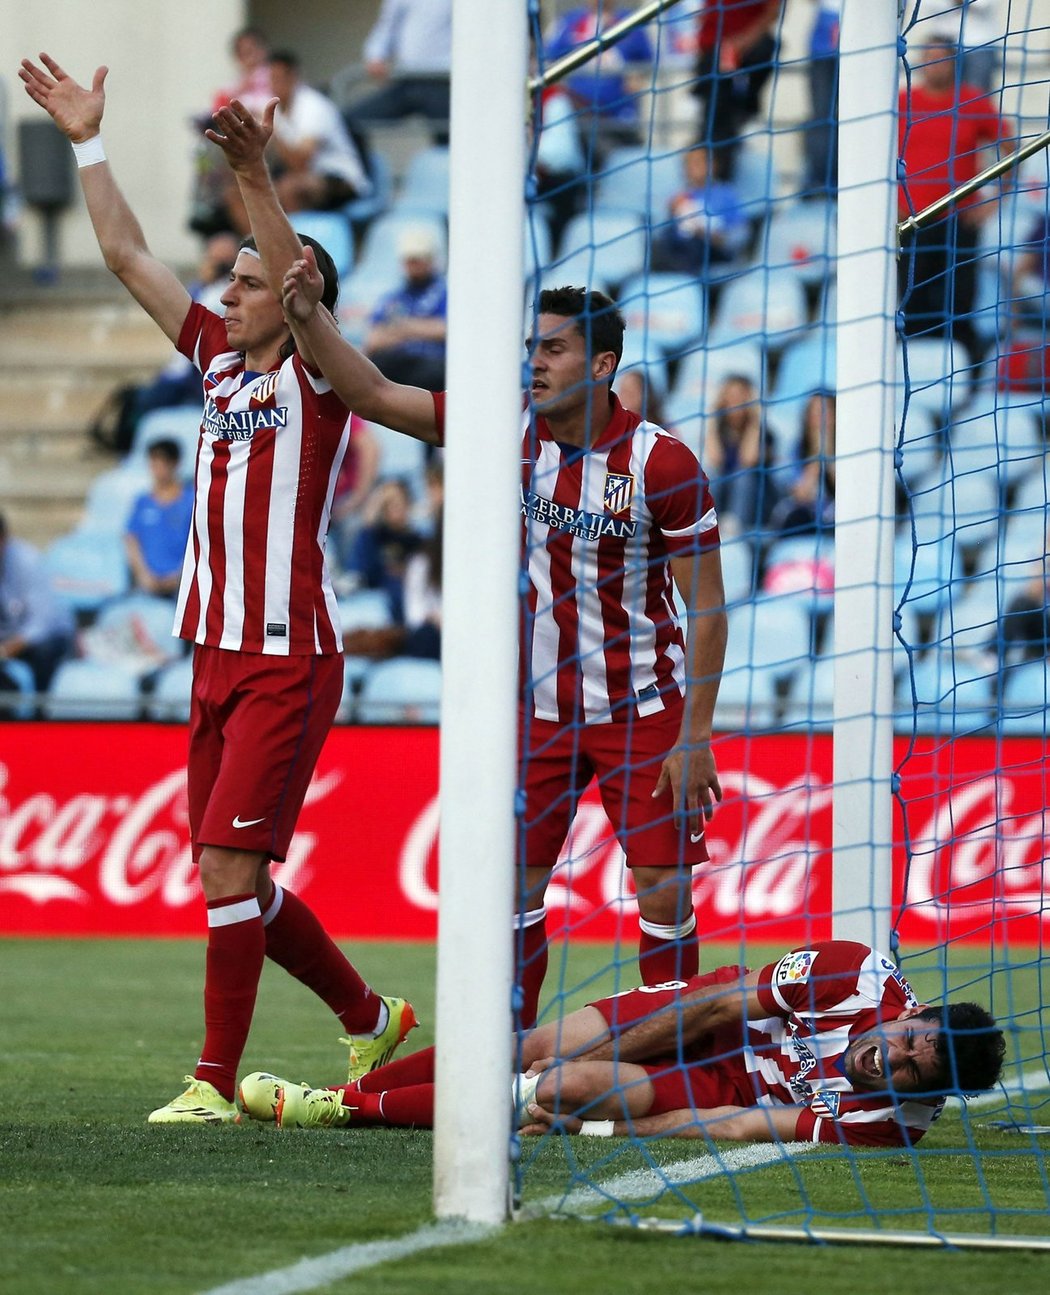 Rychle střídat! Diego Costa leží v bolestech na trávníku po svém gólovém zásahu proti Getafe, který však odnesl zraněním